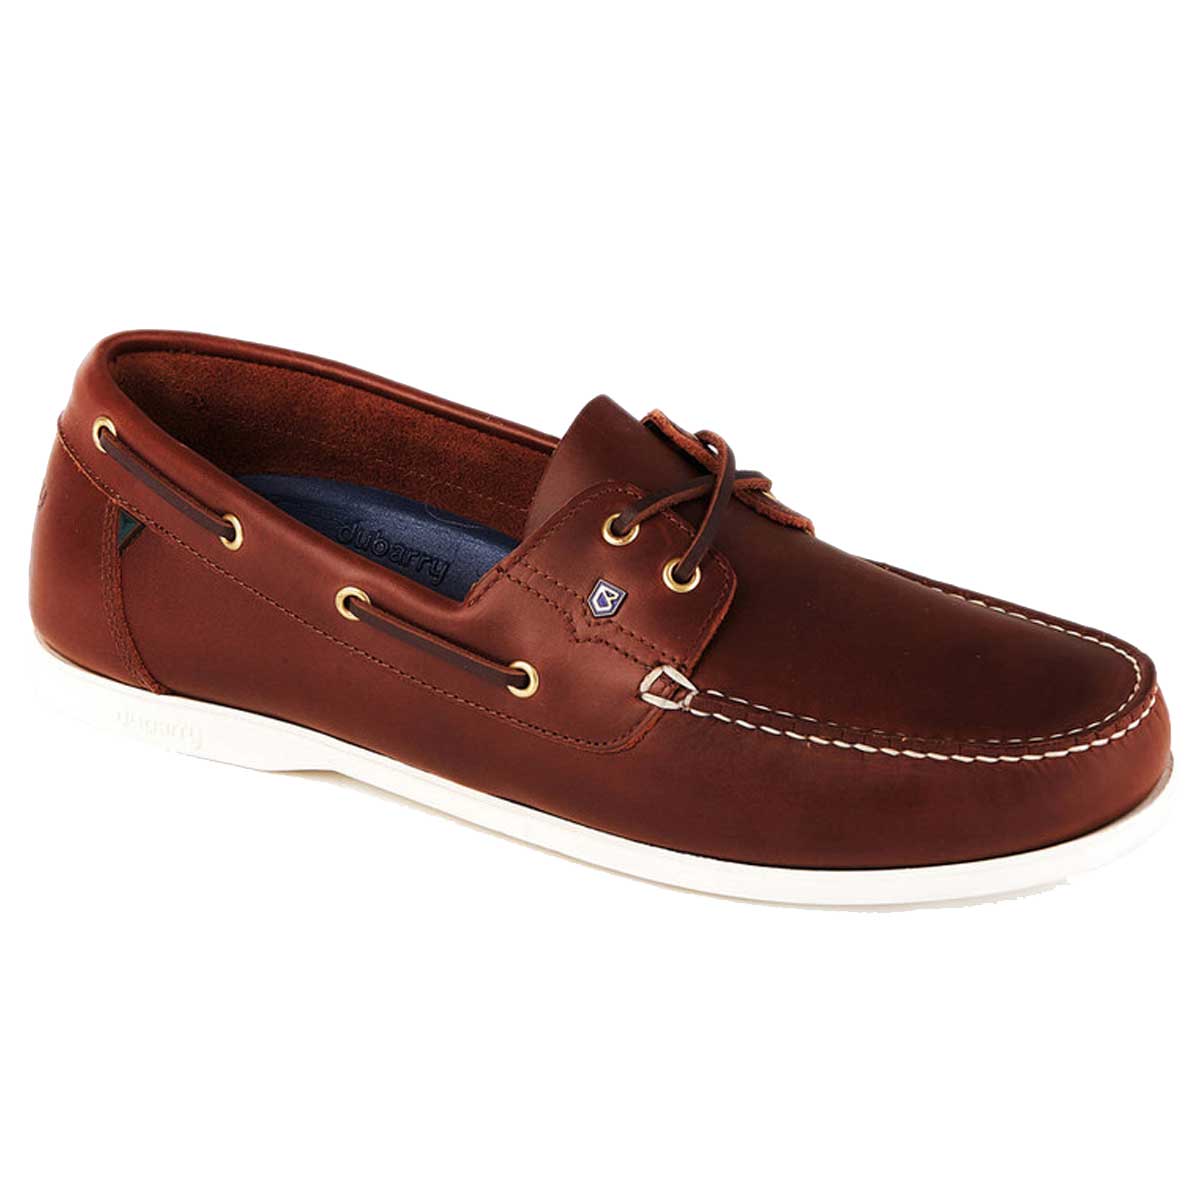 DUBARRY Men's Port Deck Shoes - Brown